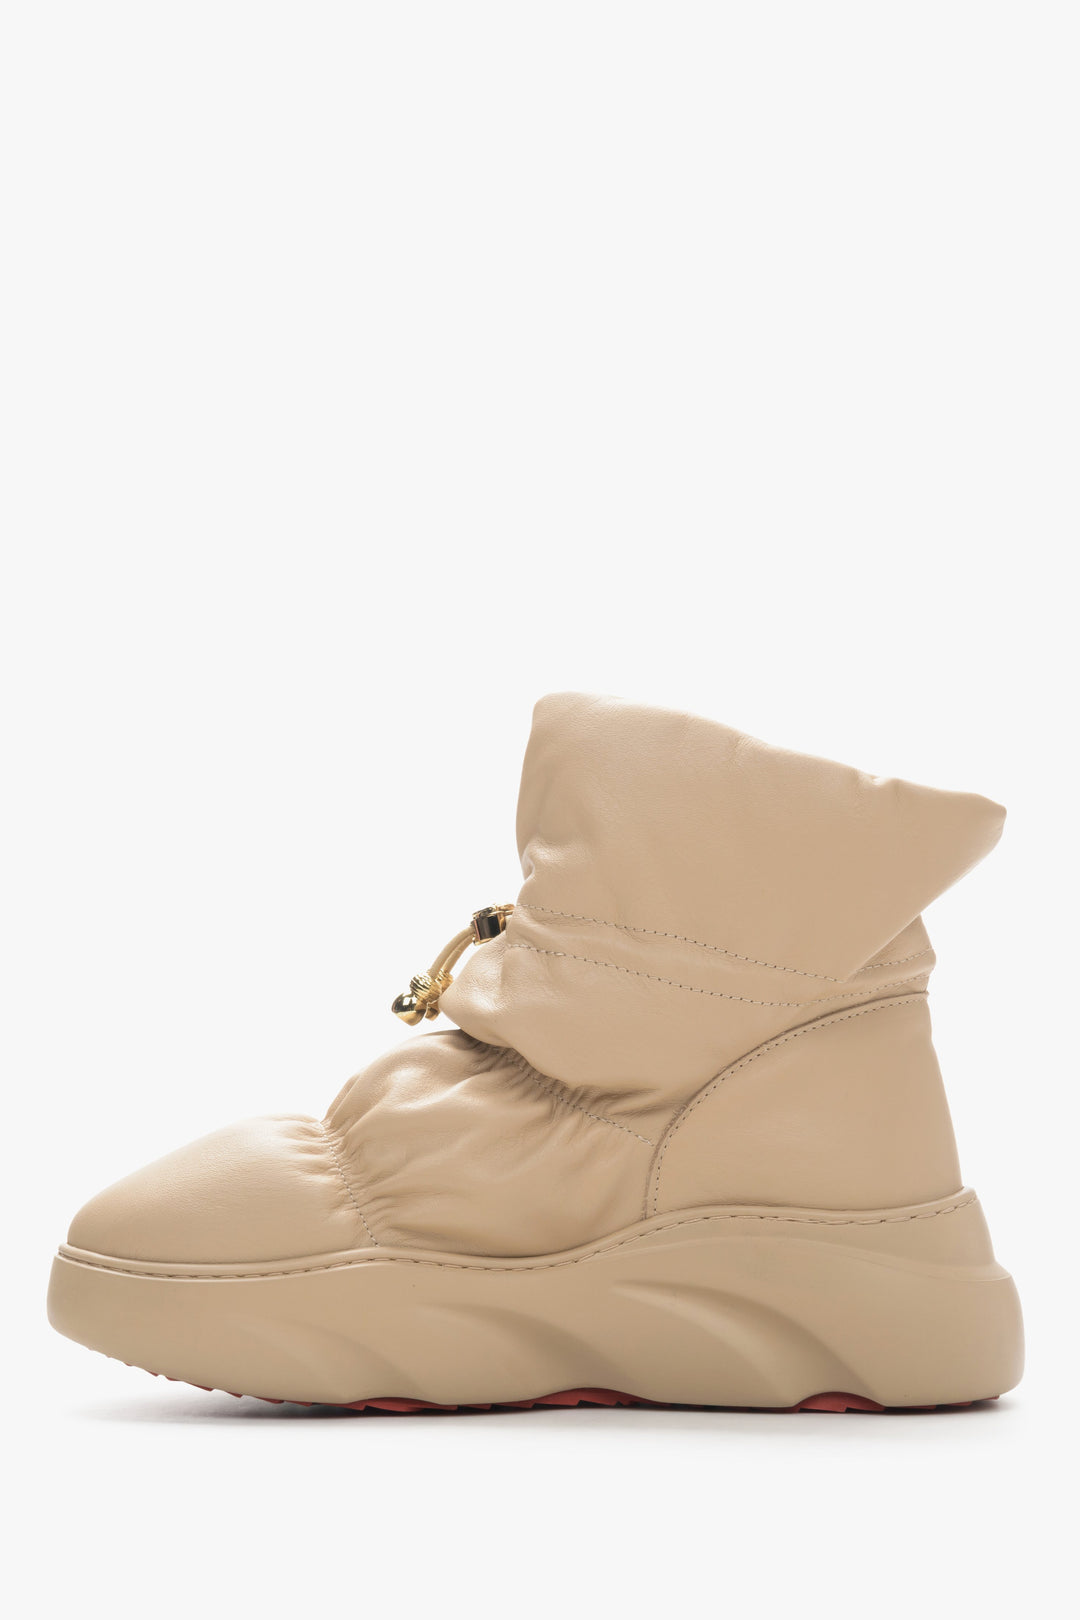 Women's beige Estro leather snow boots - shoe profile.